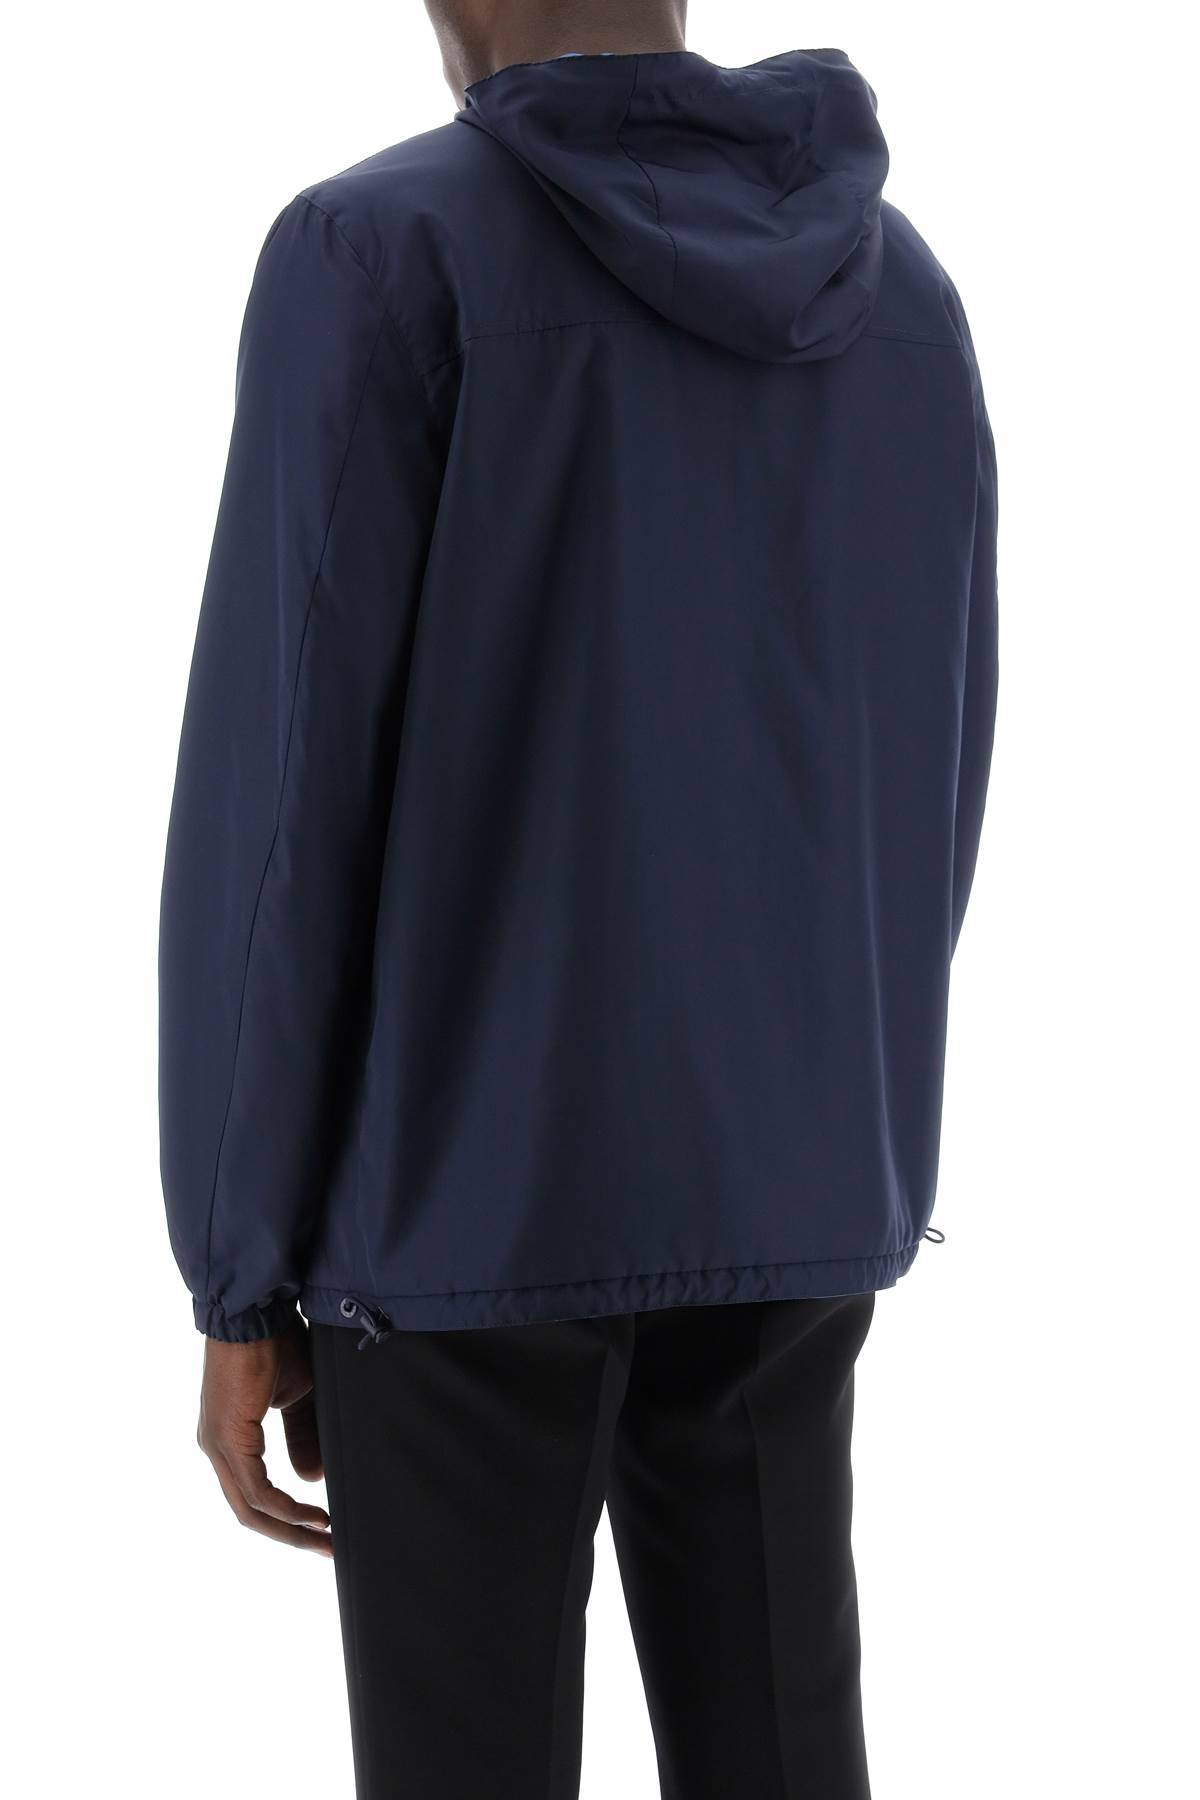 Shop Dolce & Gabbana Reversible Windbreaker Jacket In Blue